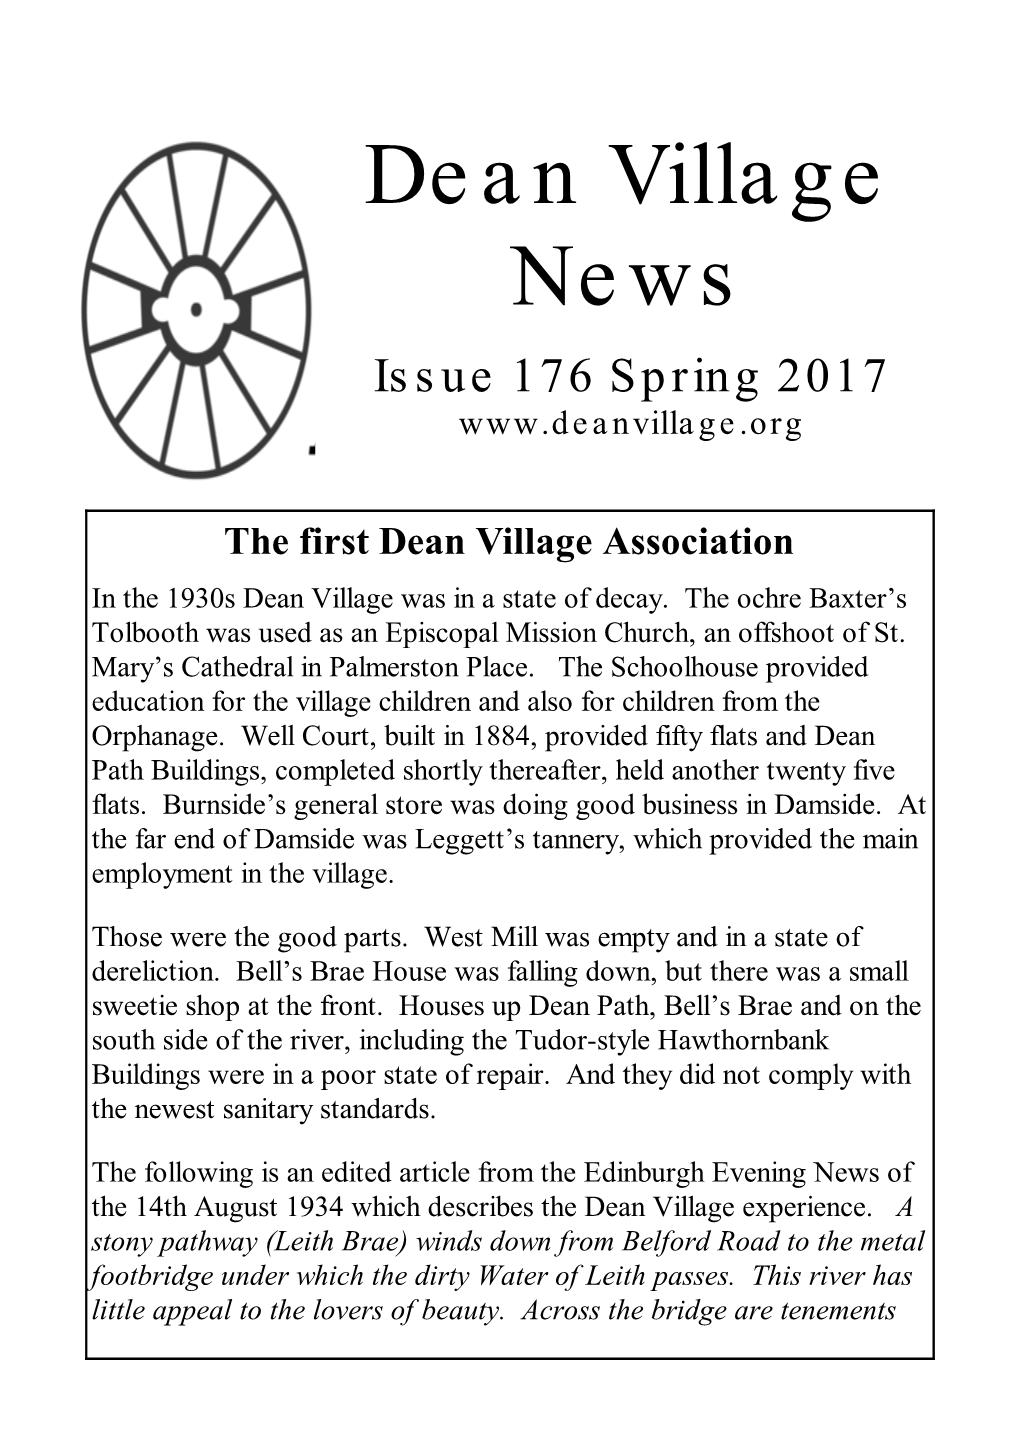 Dean Village News Issue 176 Spring 2017